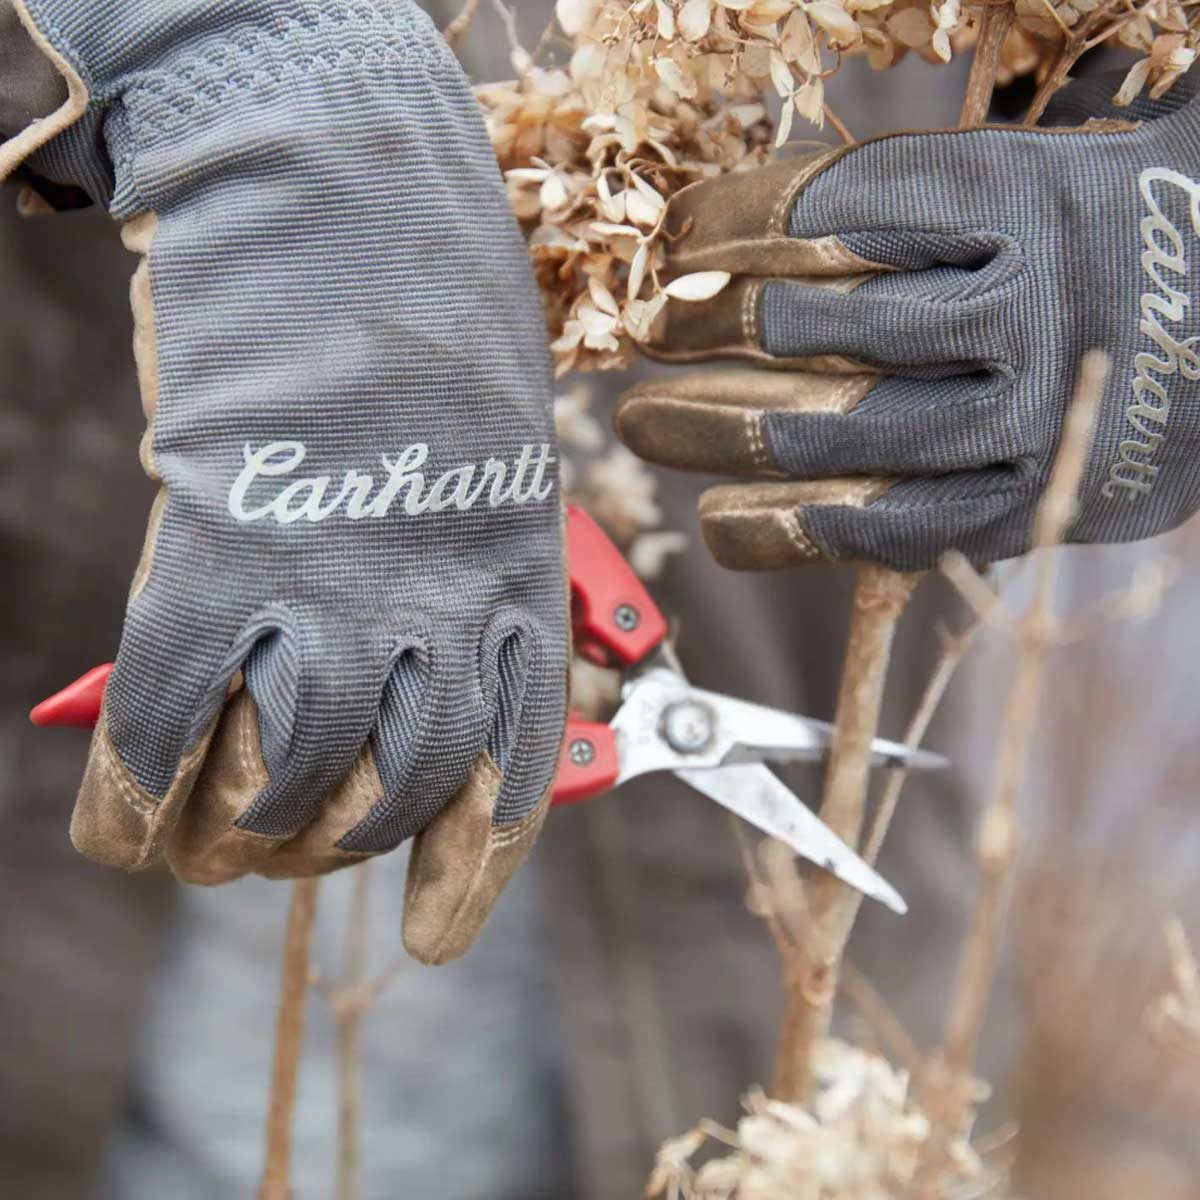 7 Best Work Gloves for Women | The Family Handyman